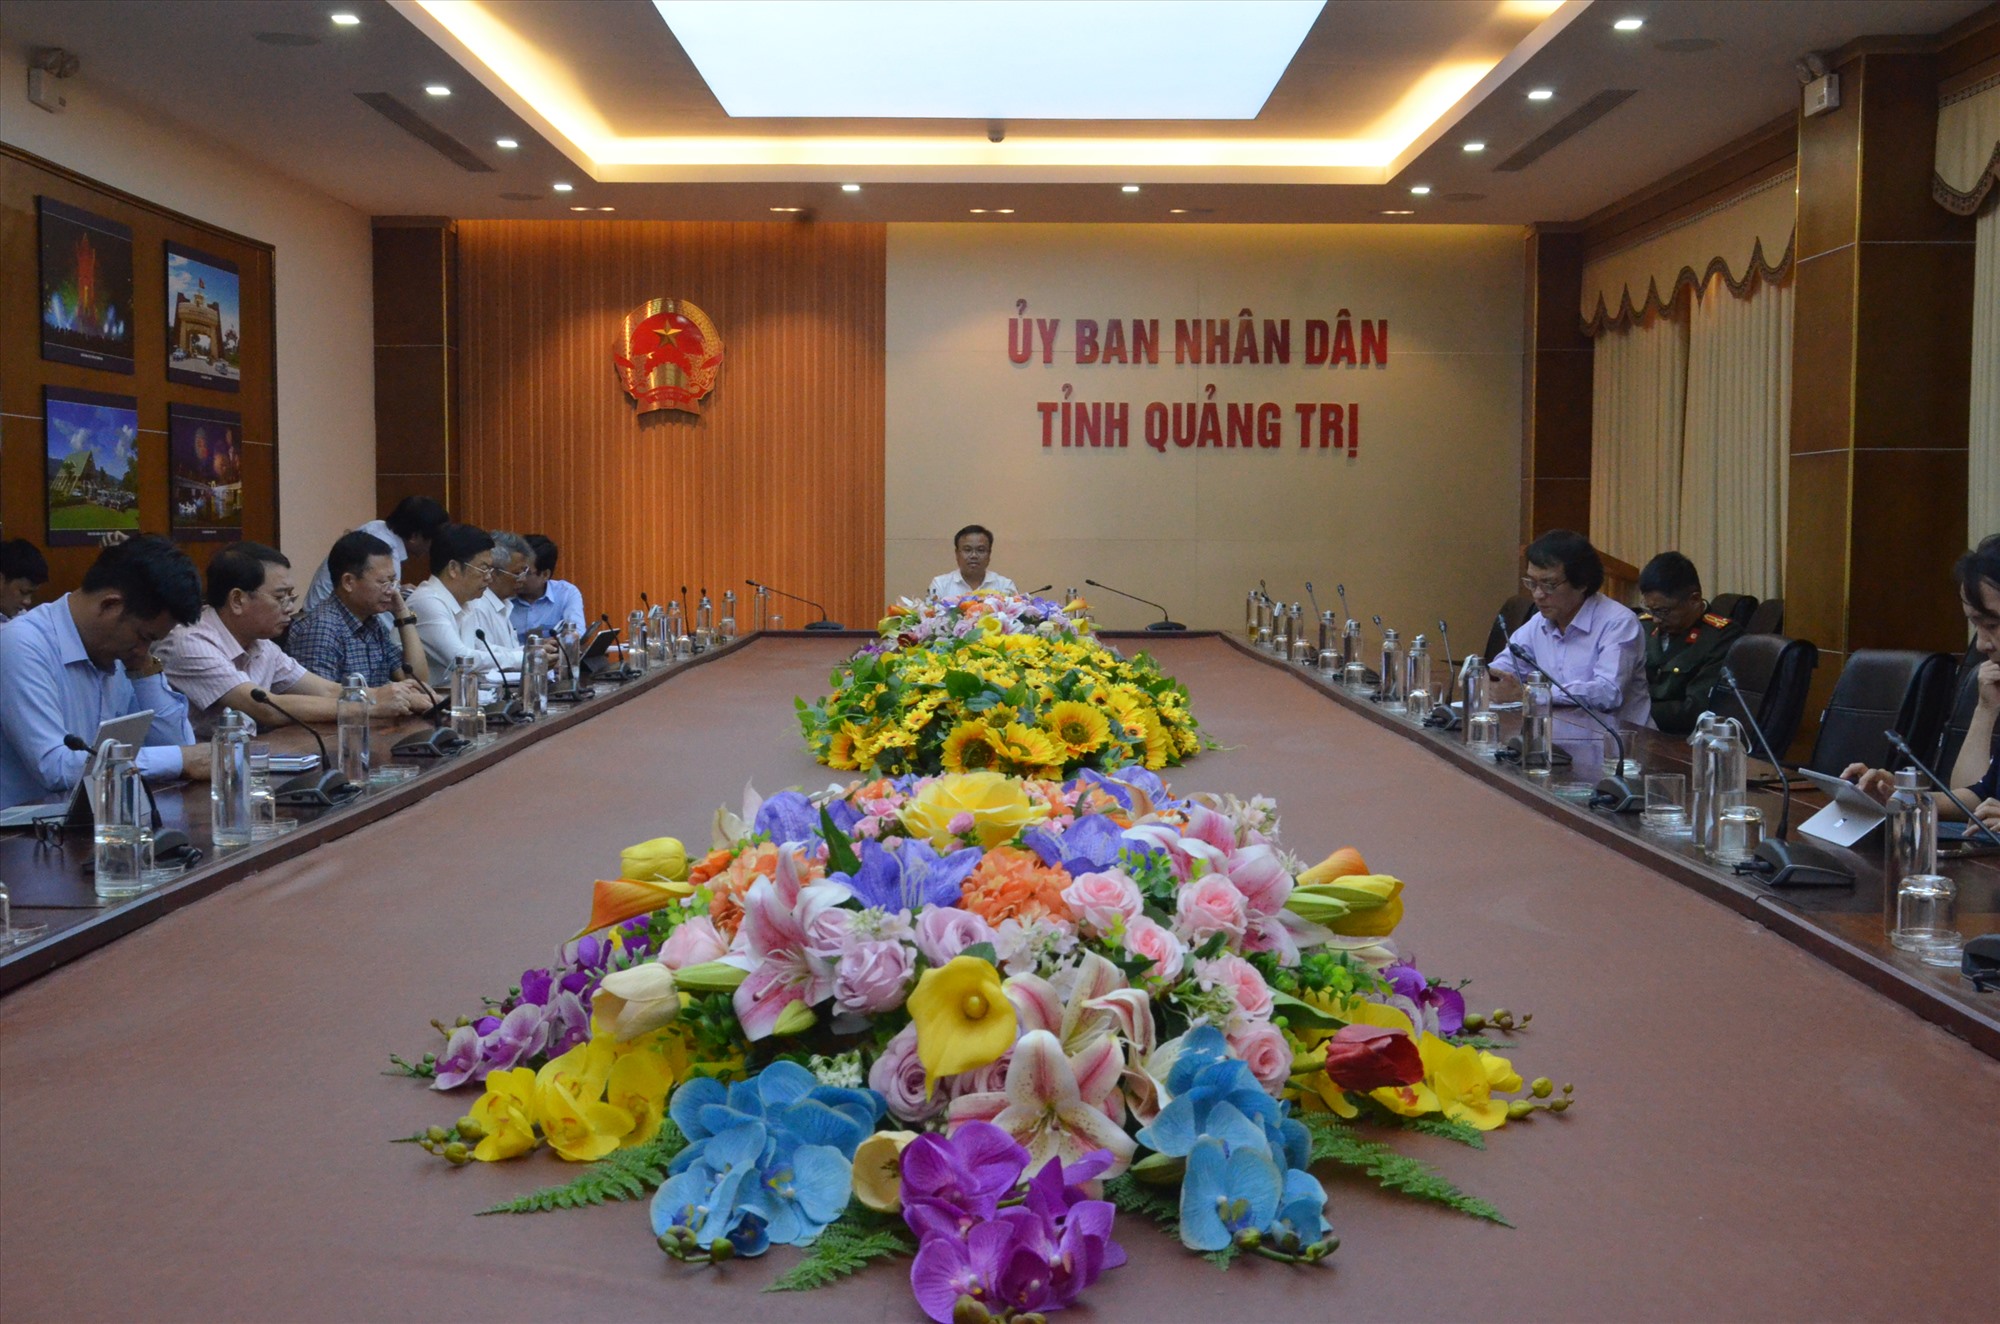 Phó Chủ tịch UBND tỉnh Lê Đức Tiến cùng lãnh đạo các sở, ngành tham dự hội nghị tại điểm cầu Quảng Trị - Ảnh: Lê Minh